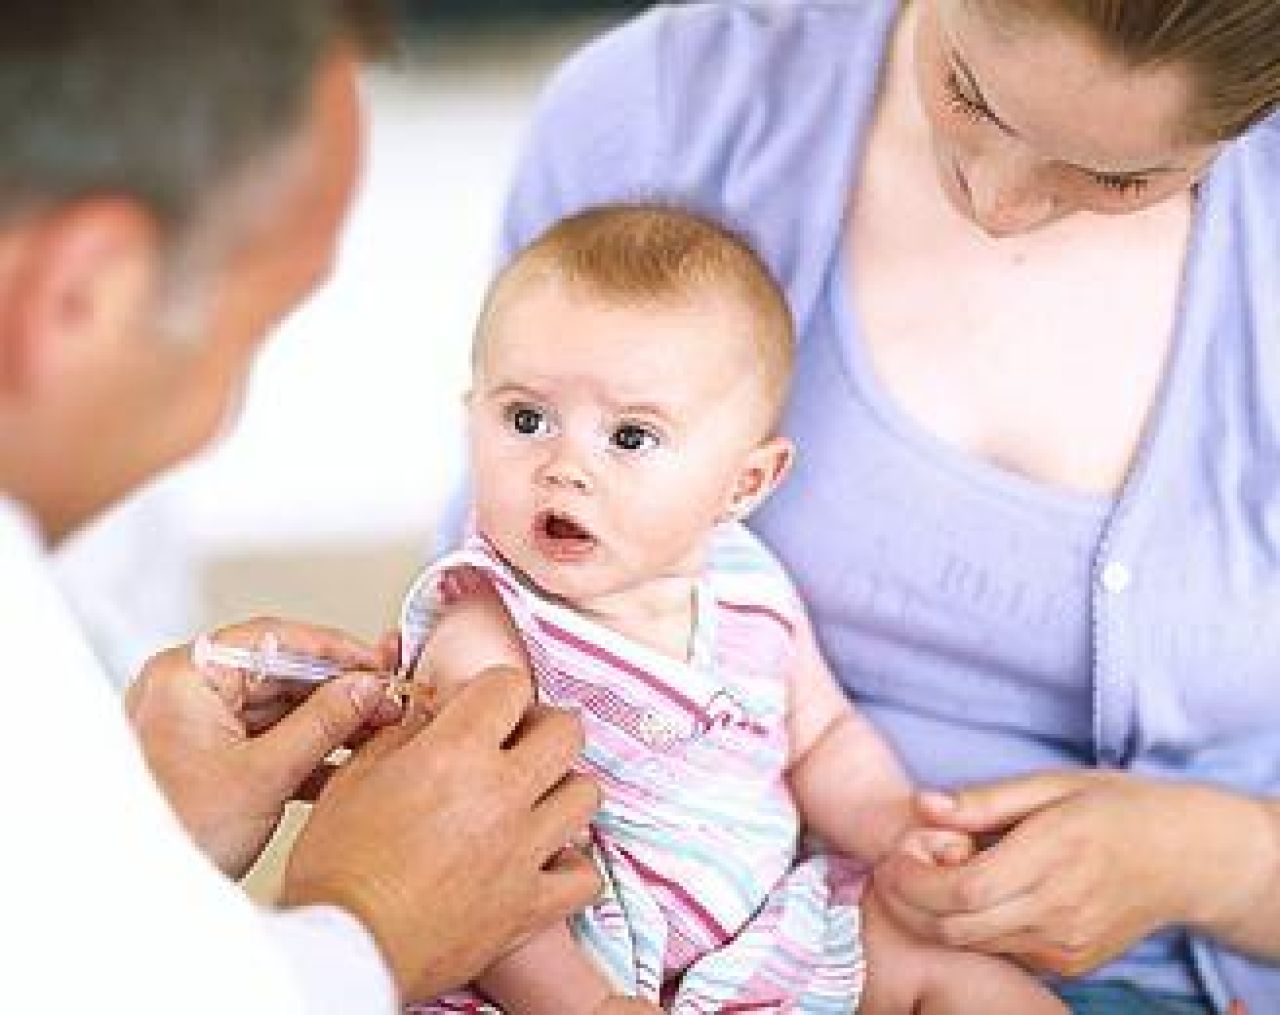 Bezpłatne szczepienia dla dzieci w Krakowie